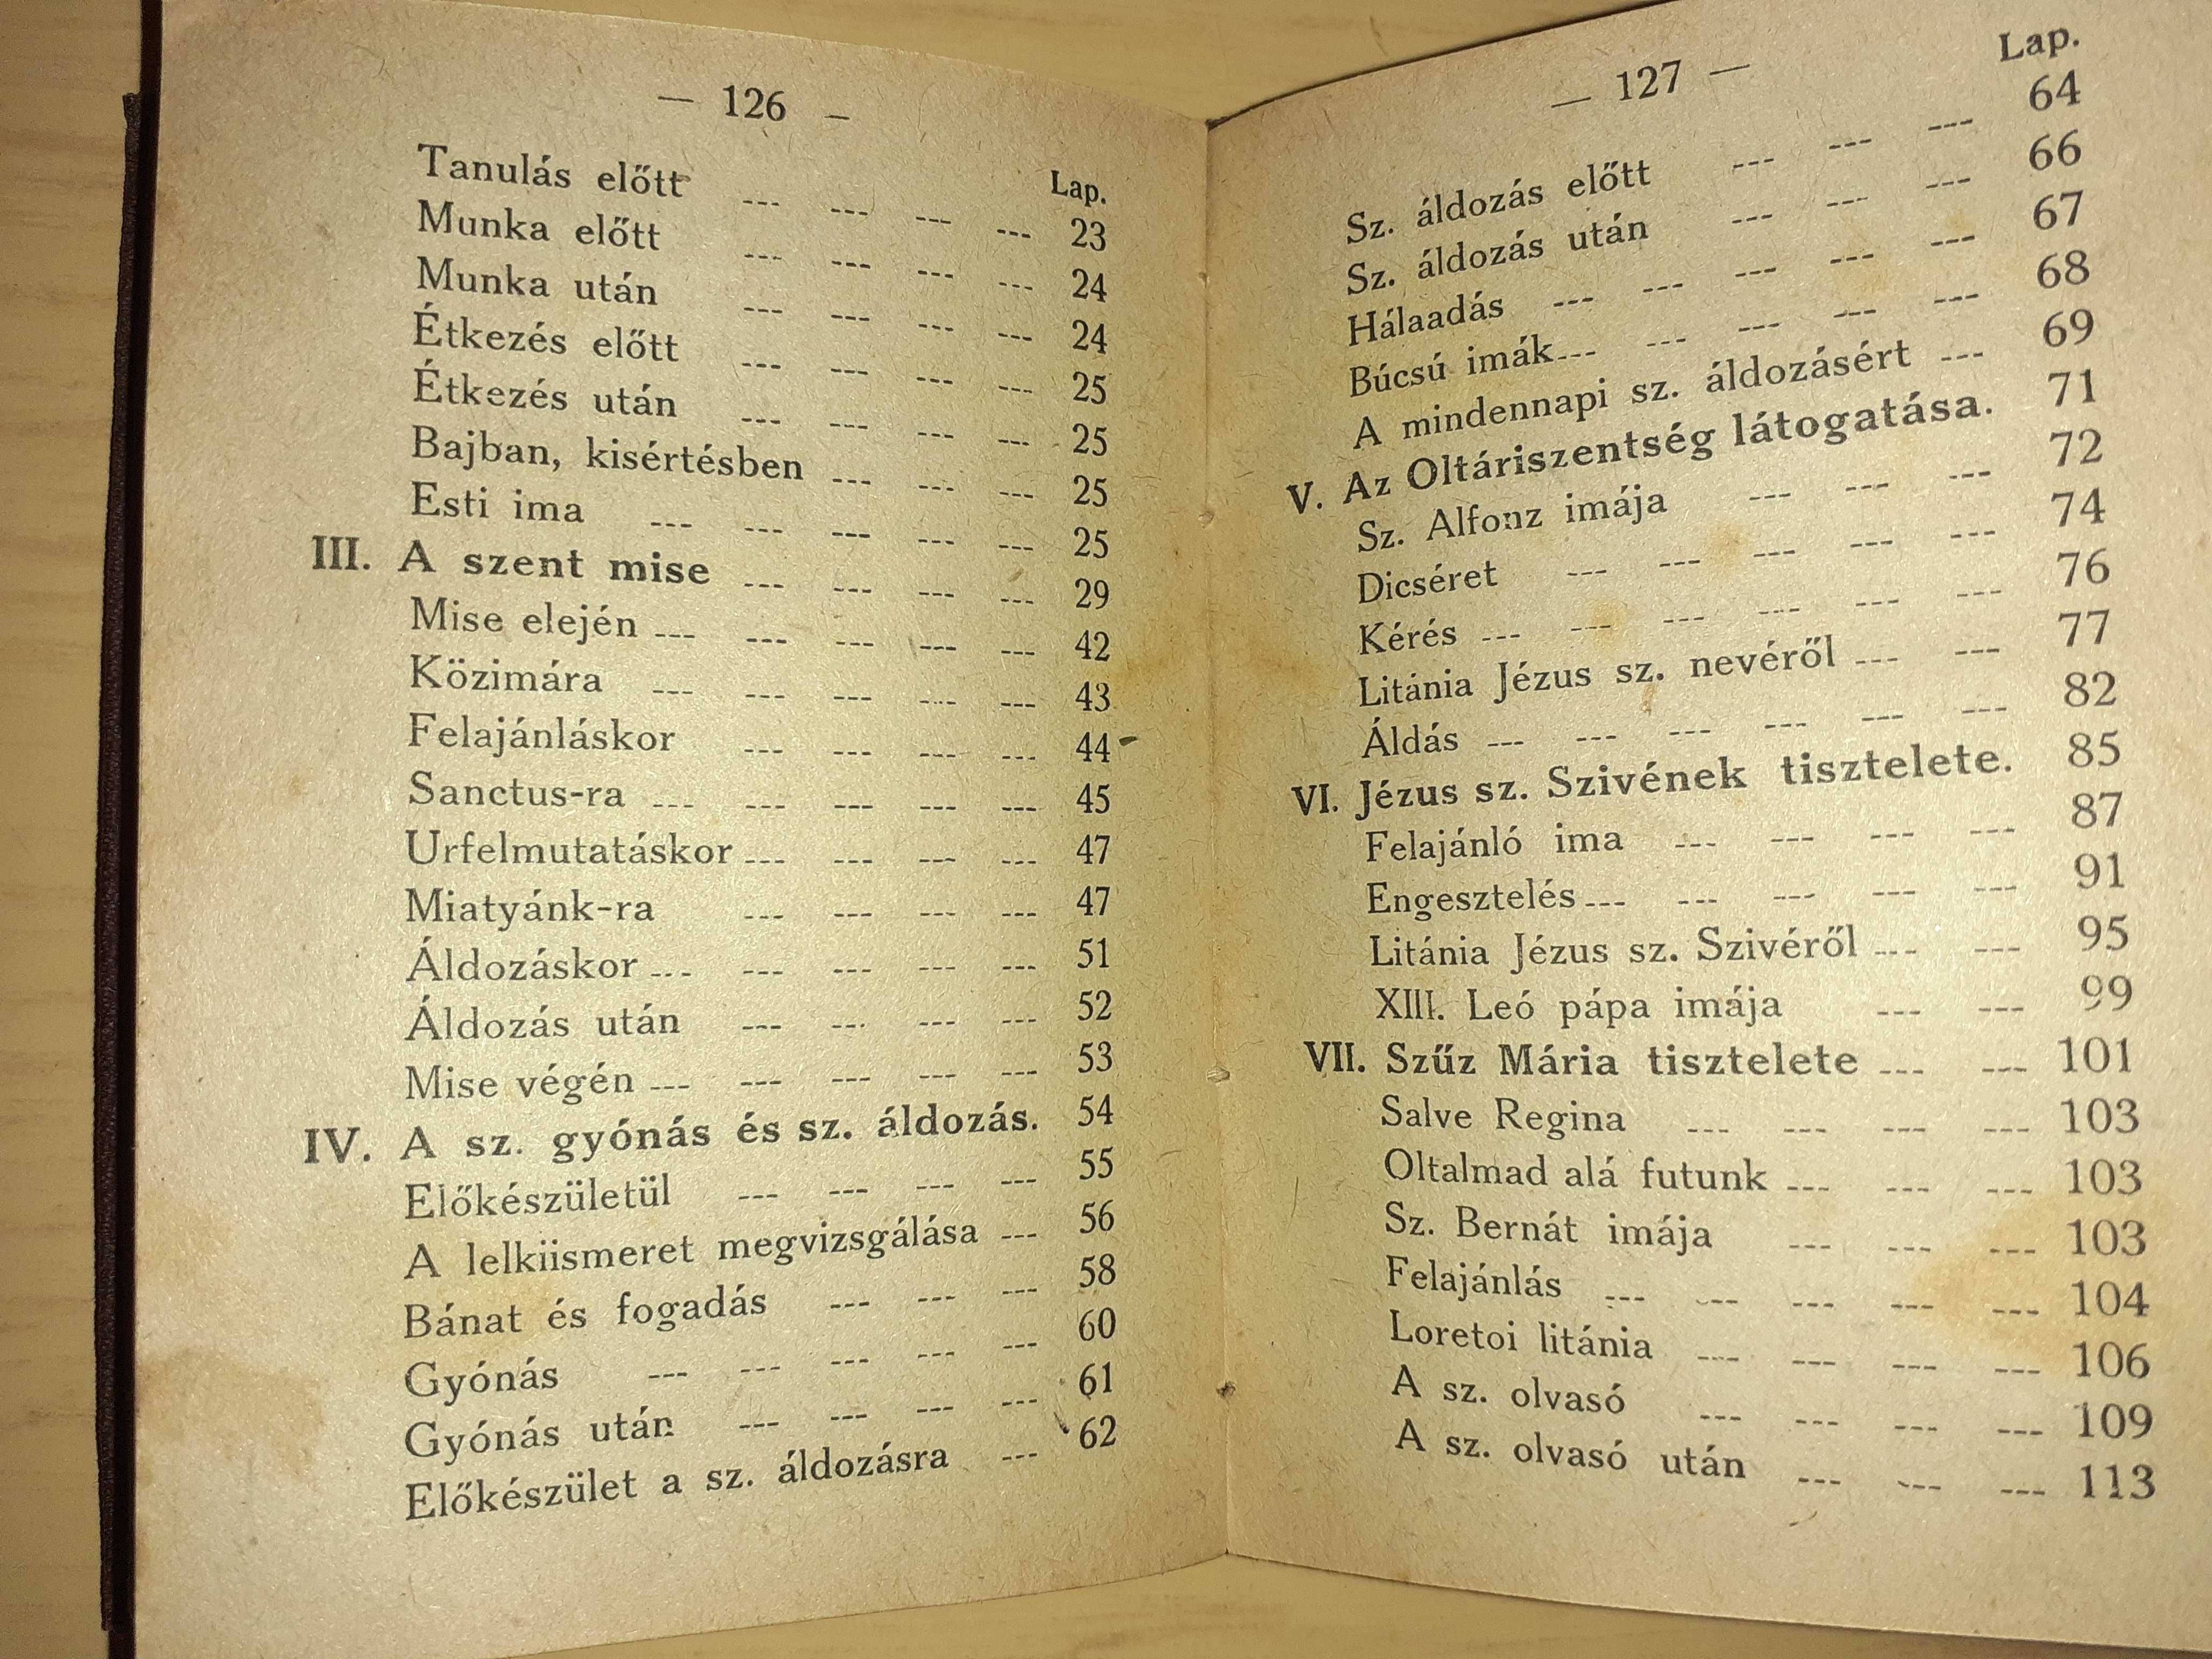 Carte religioasa din anul 1921